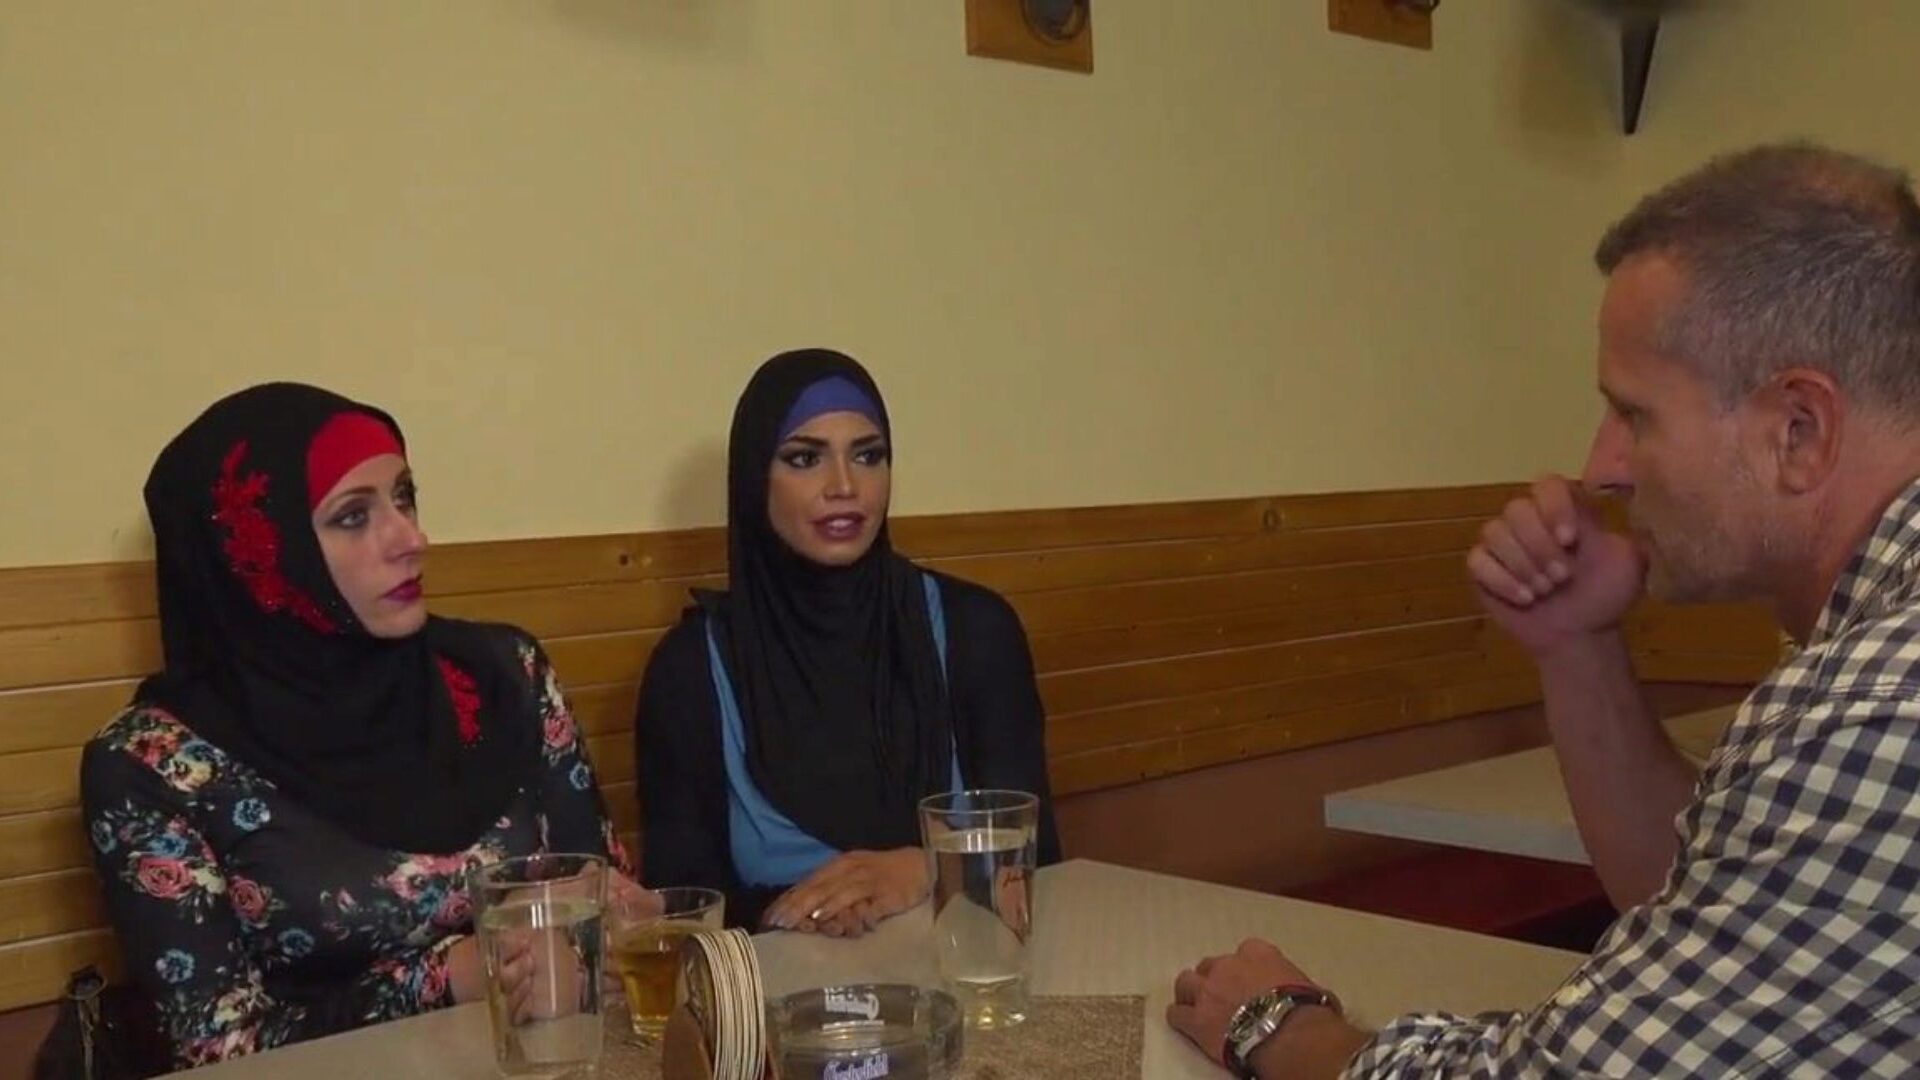 muzułmański scenariusz hidżabu 11, darmowe muzułmańskie hidżab porno hd a9 oglądaj hidżab muzułmański scenariusz 11 wideo na xhamster, najgrubszej stronie z kanałami HD z mnóstwem darmowych arabskich muzułmańskich hidżabów i arabskich filmów porno z hidżabem